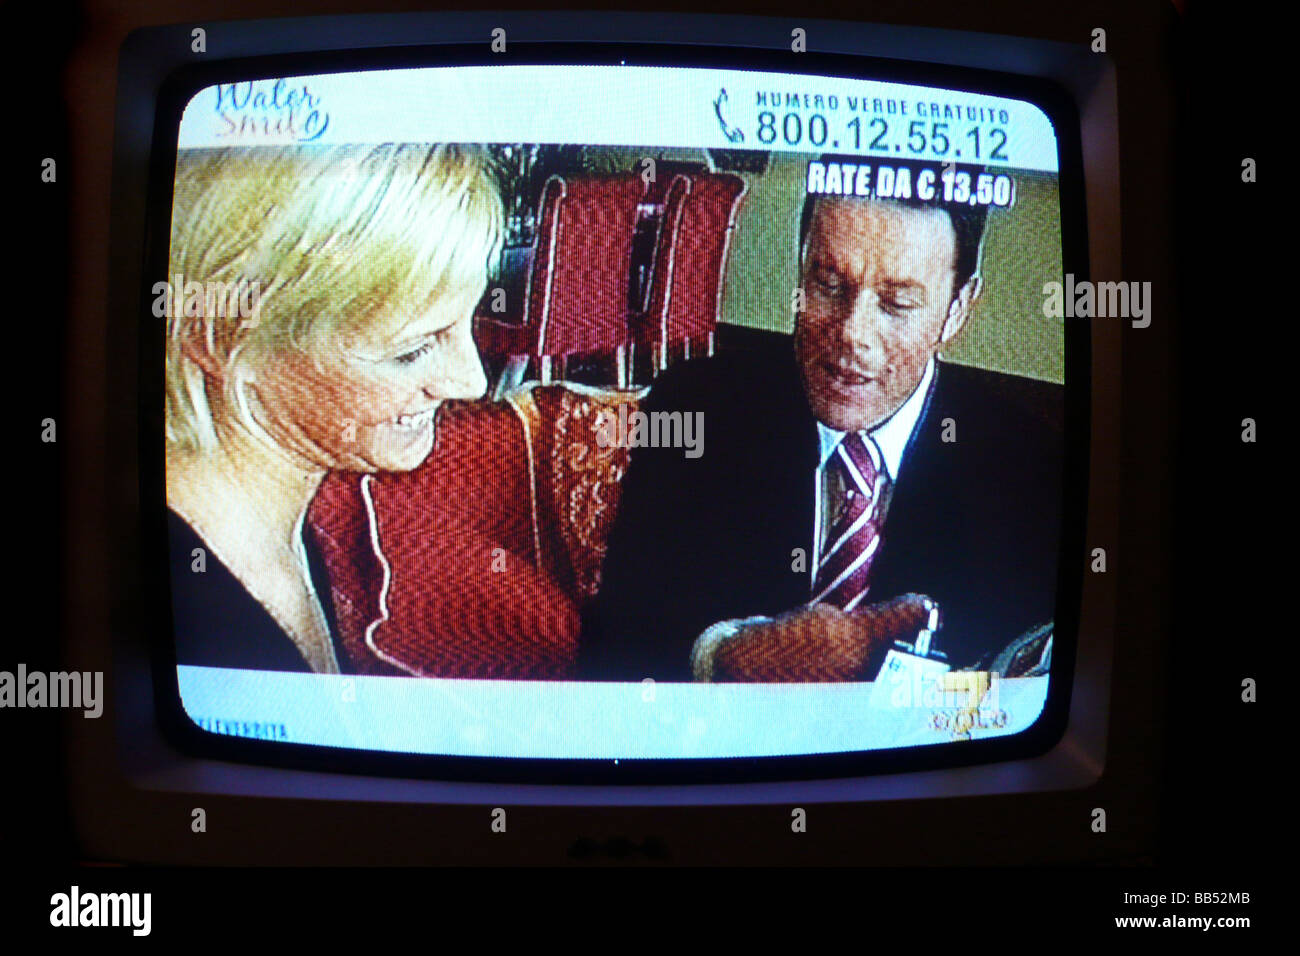 italian television Stock Photo